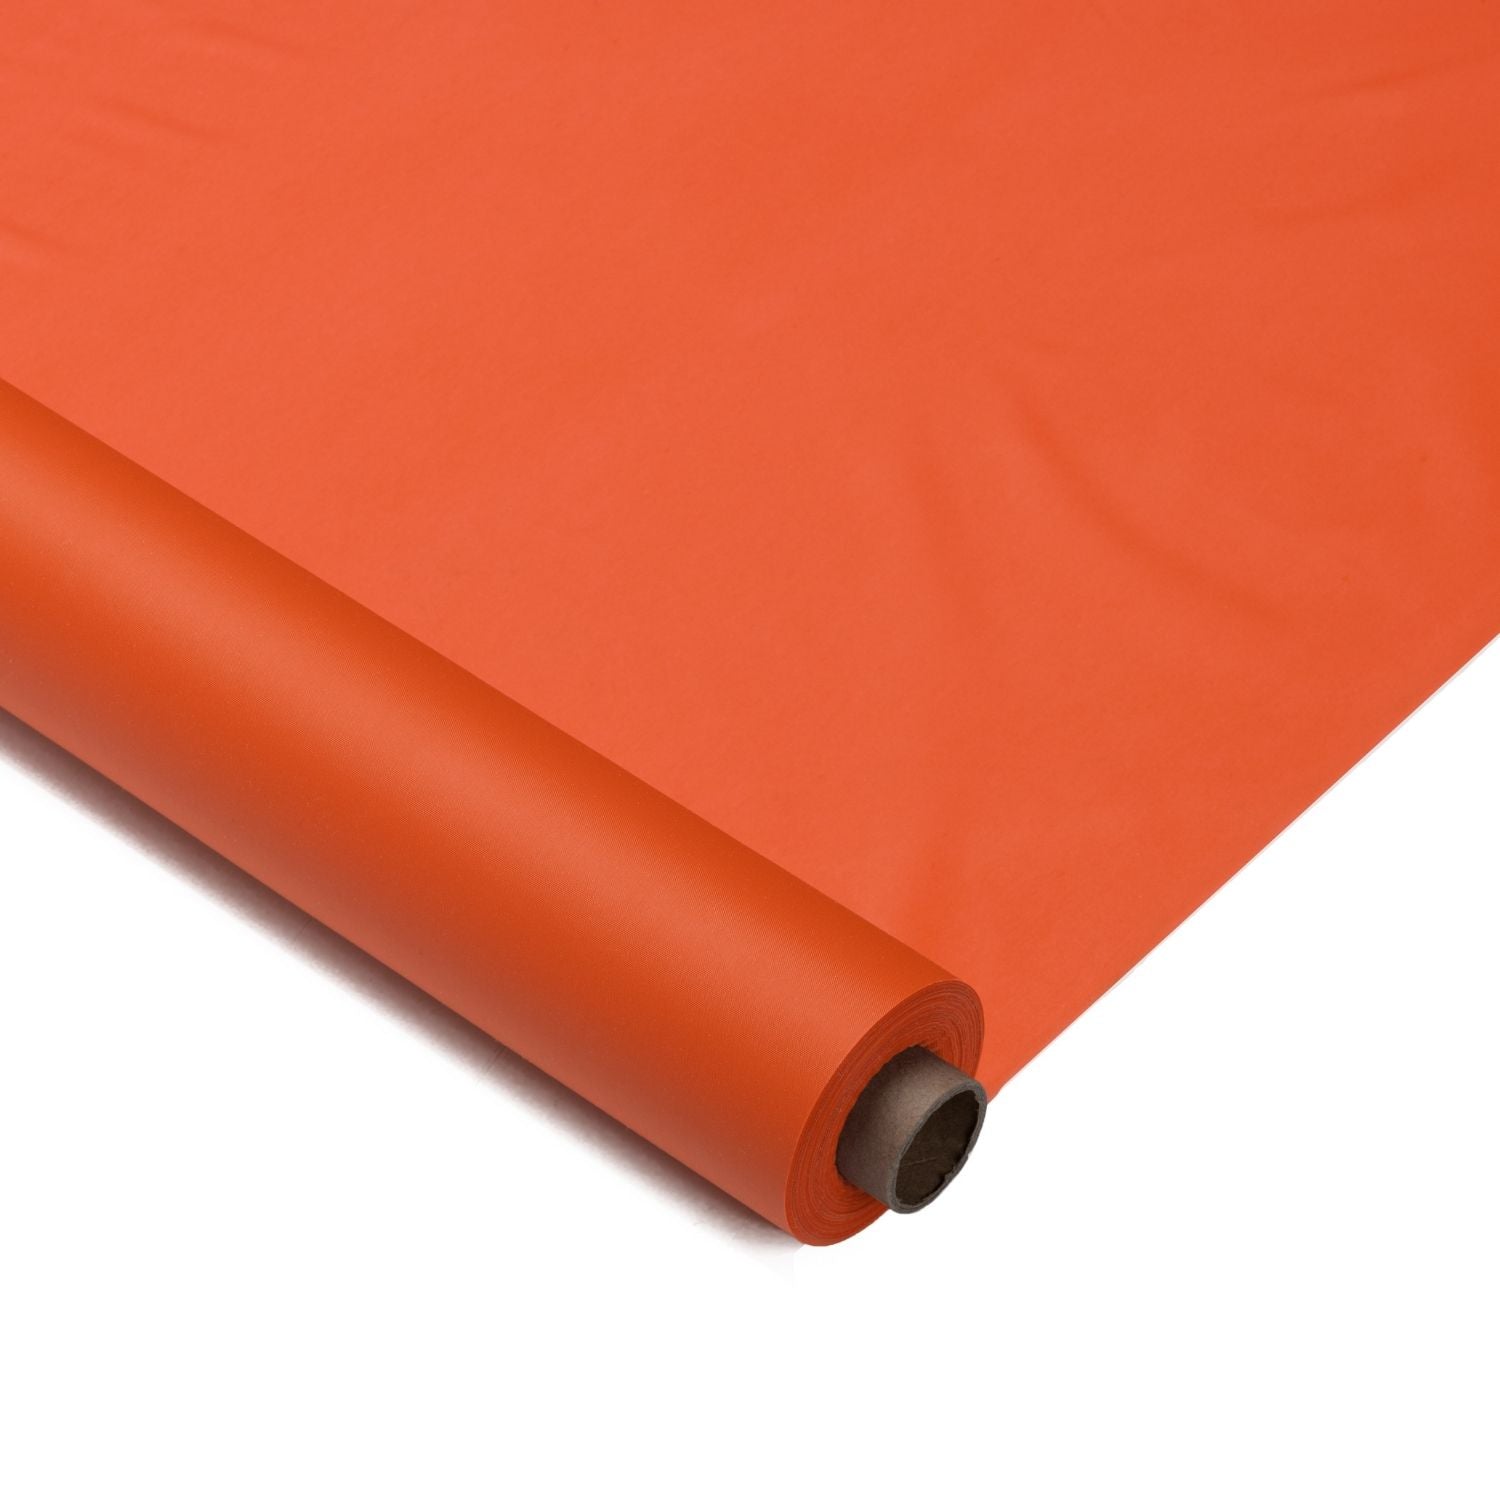 40 In. X 300 Ft. Premium Orange Plastic Table Roll | 4 Pack